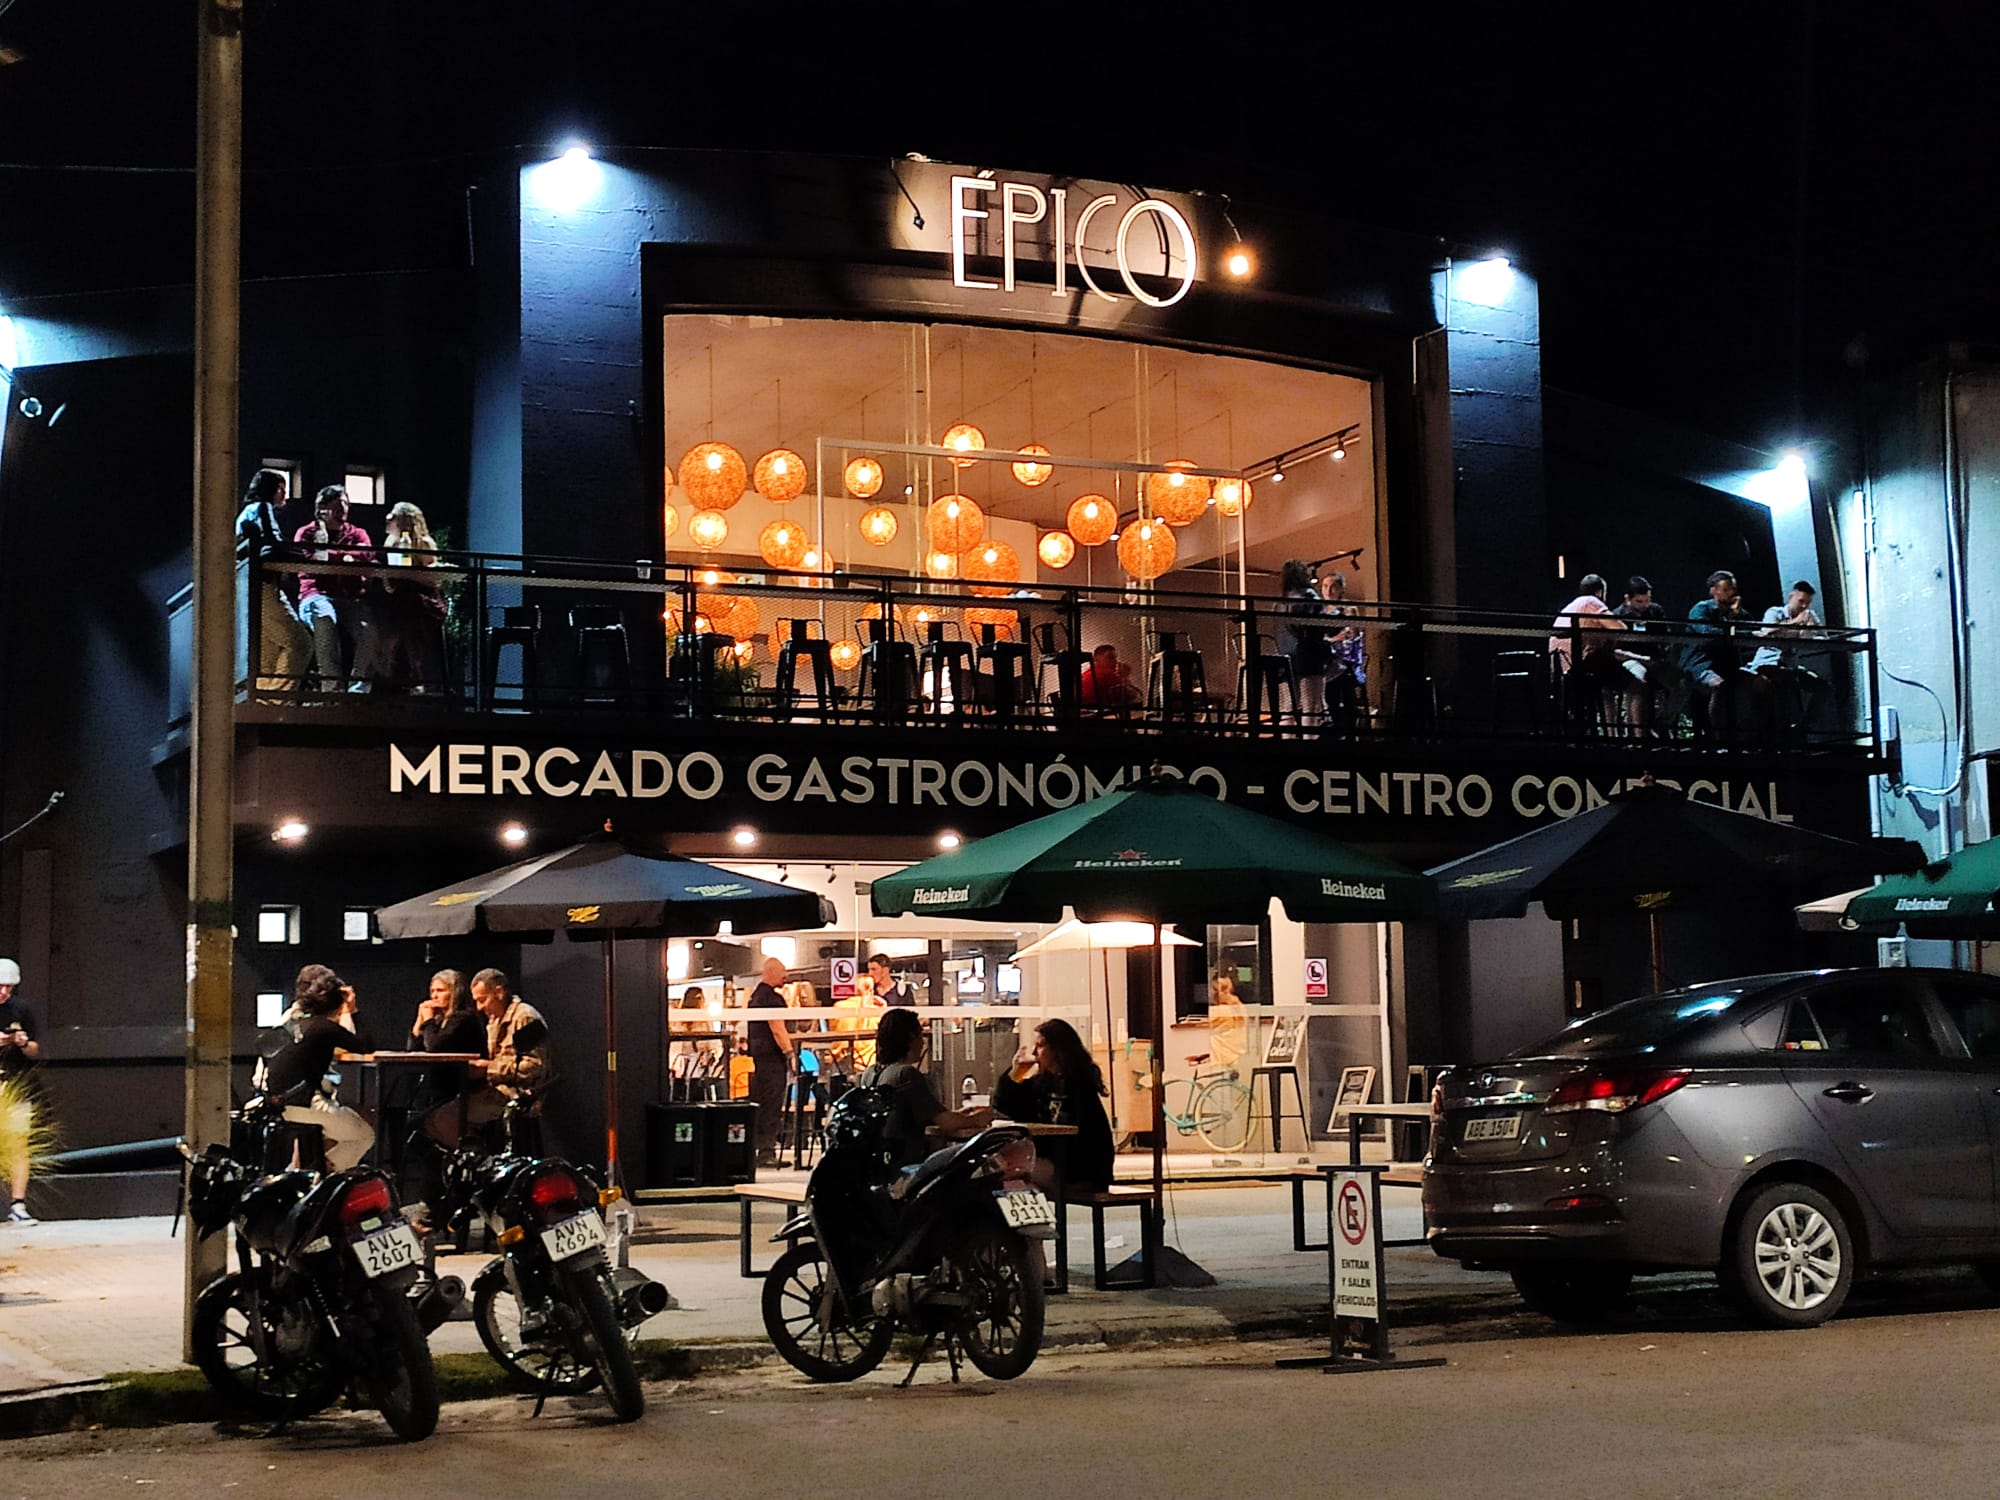 Épico - Mercado Gastronómico y Centro Comercial